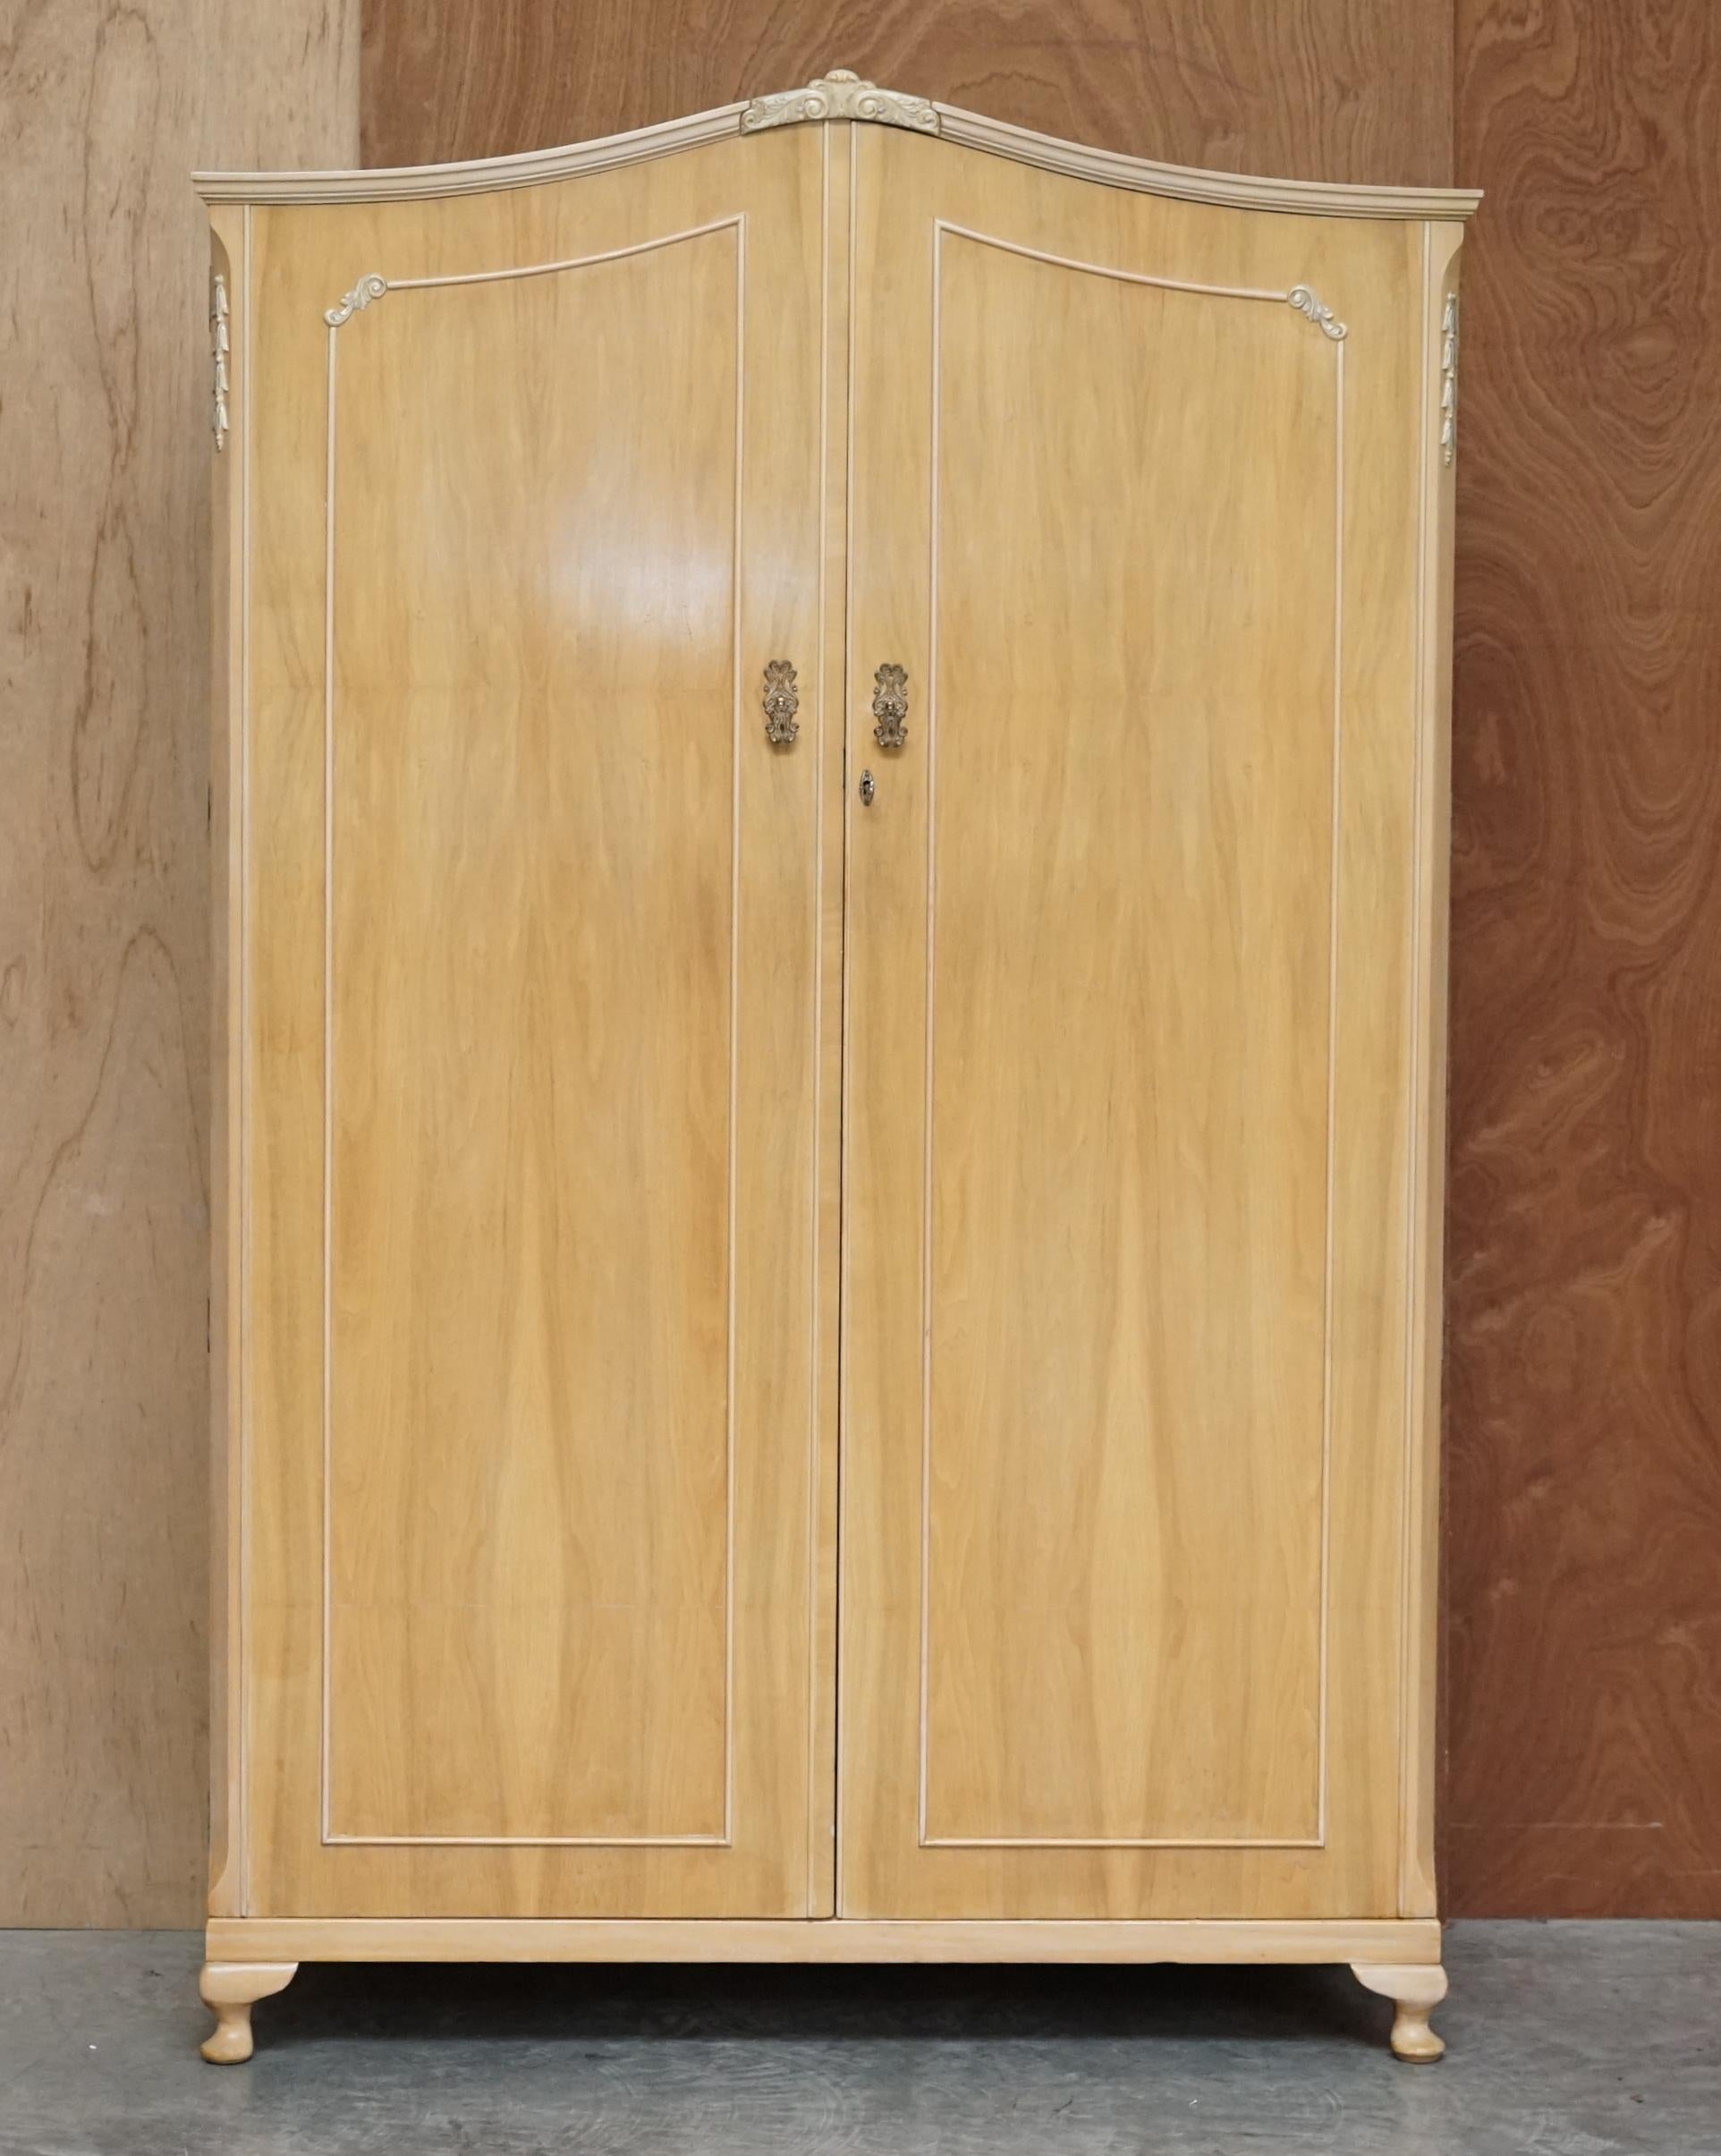 Nous avons le plaisir de vous proposer une belle armoire double en noyer clair datant des années 1940, fabriquée par The Walnut Cabinet Works, qui fait partie d'une grande suite.

Cette pièce fait partie d'une suite comme mentionné, j'ai au total